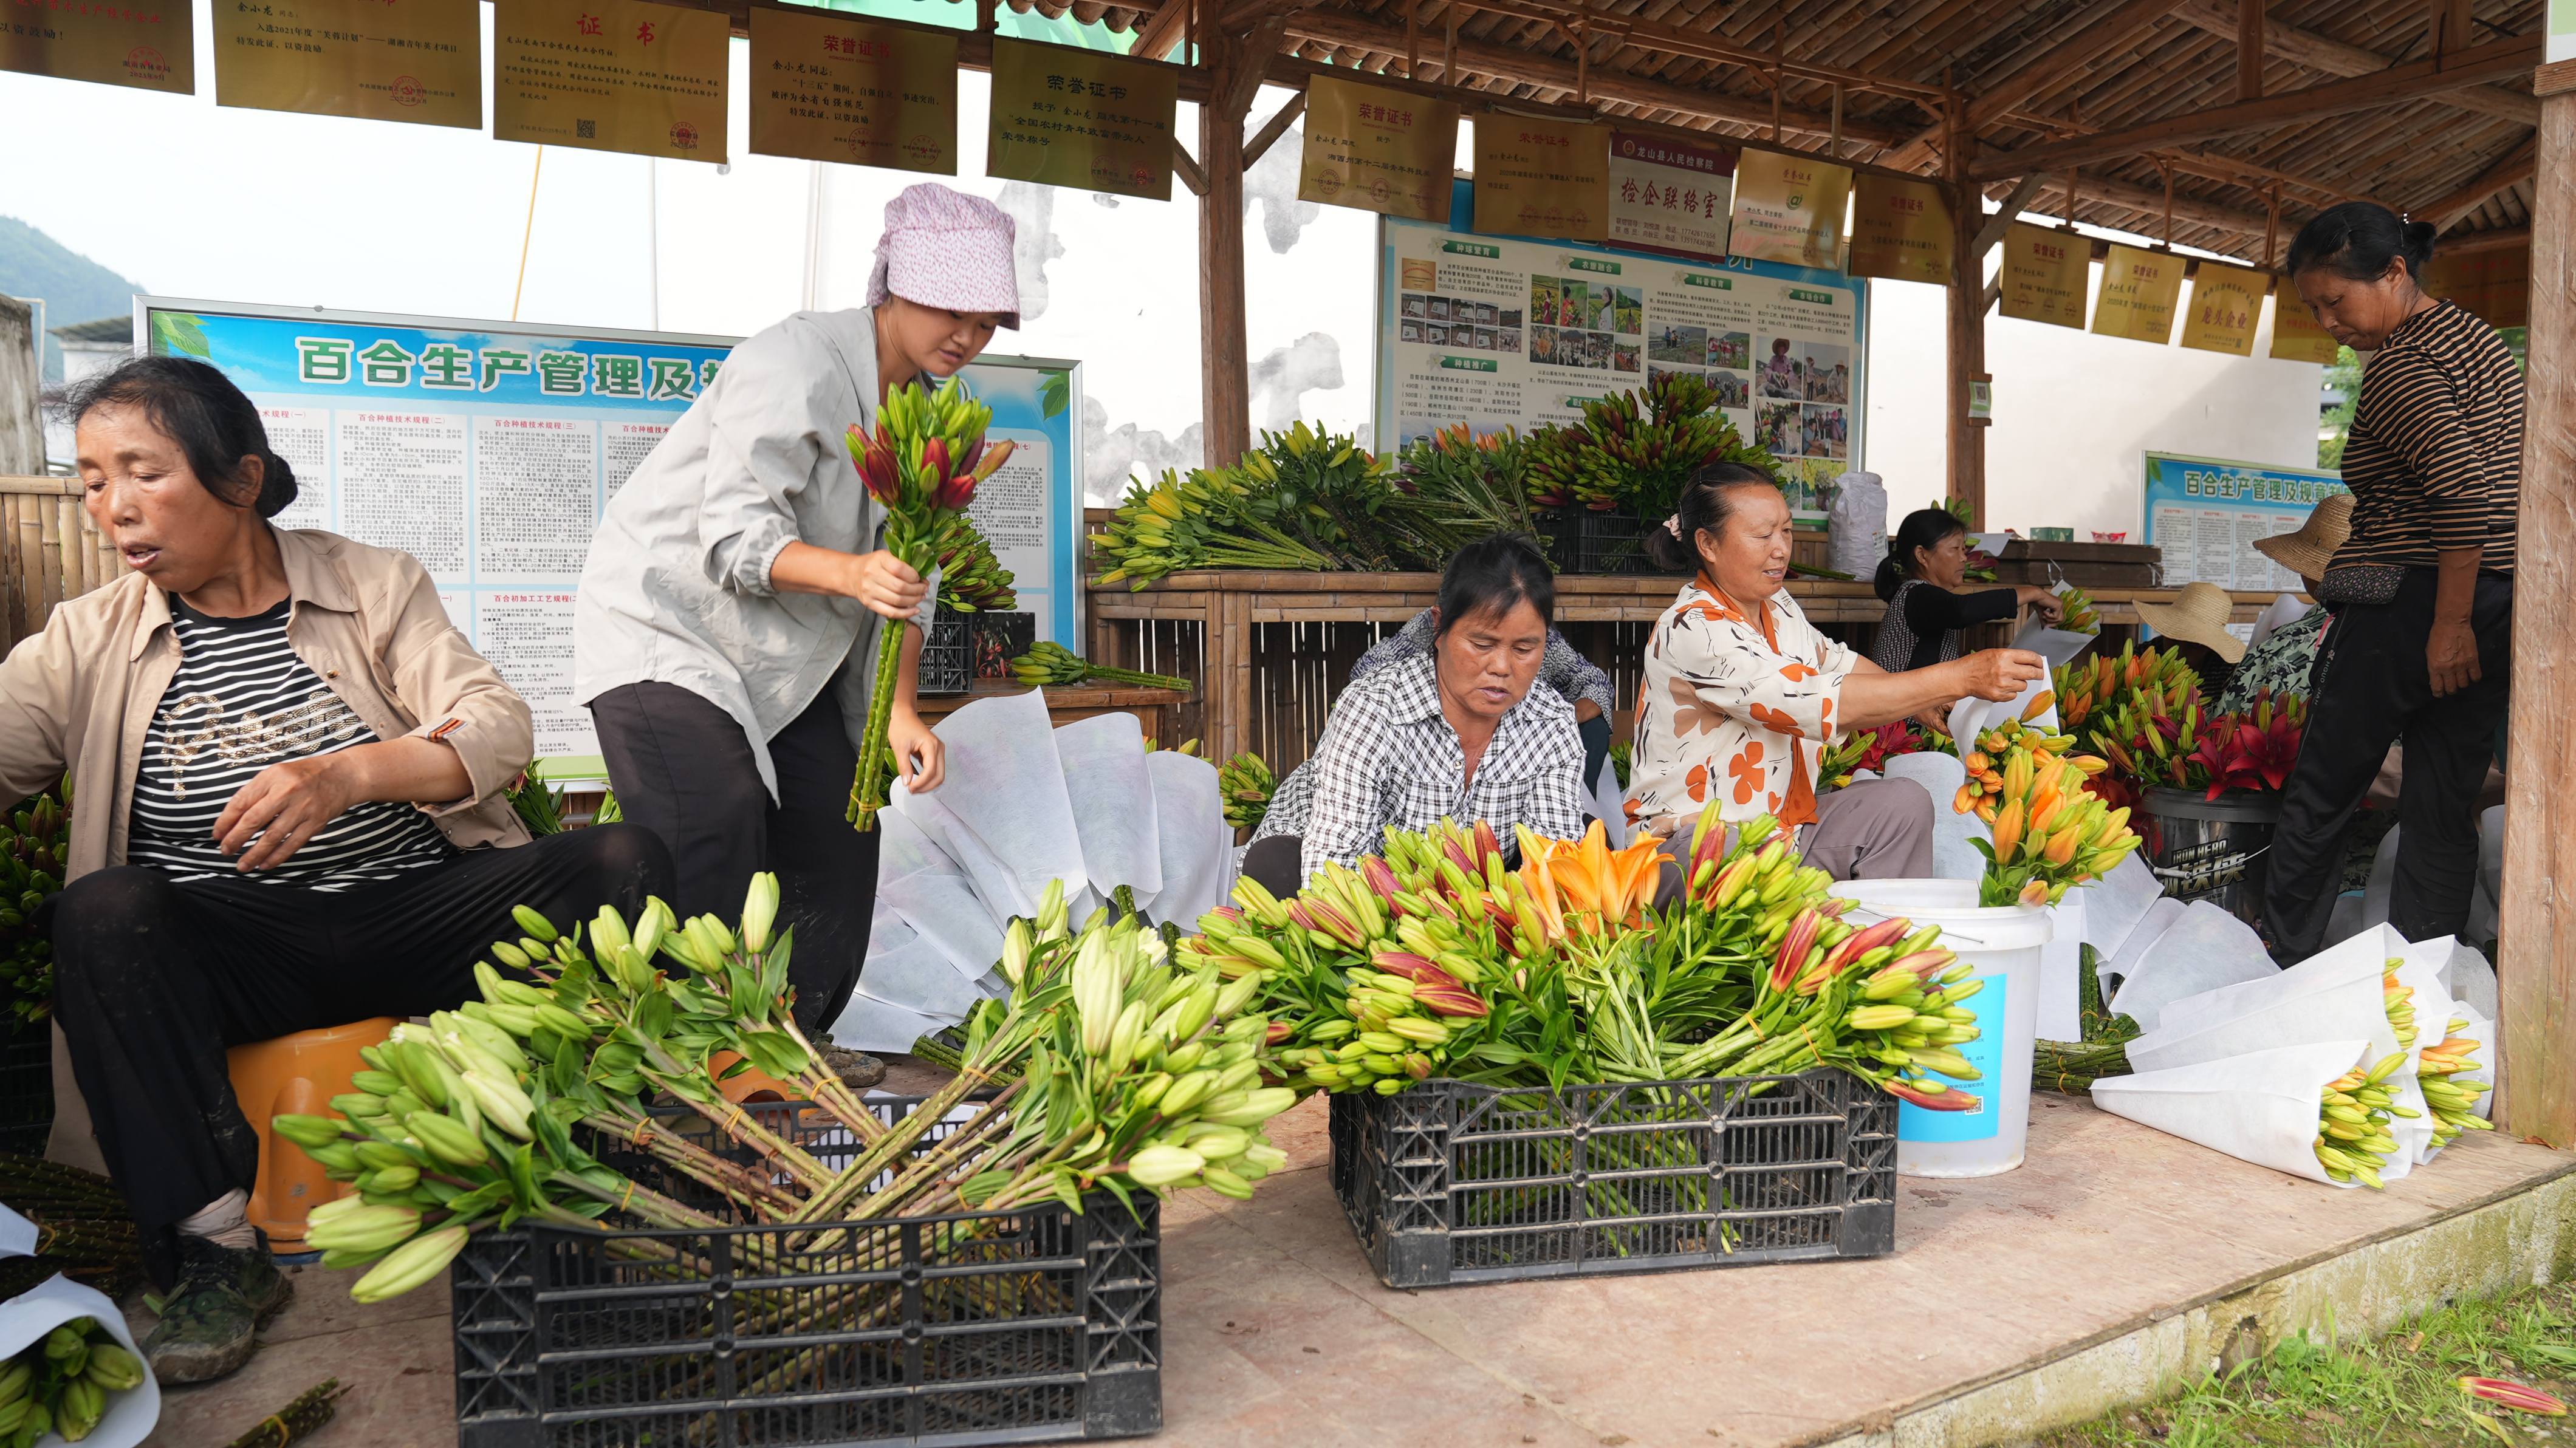 彭翠英和村民一起打包刚刚采摘好的百合花。